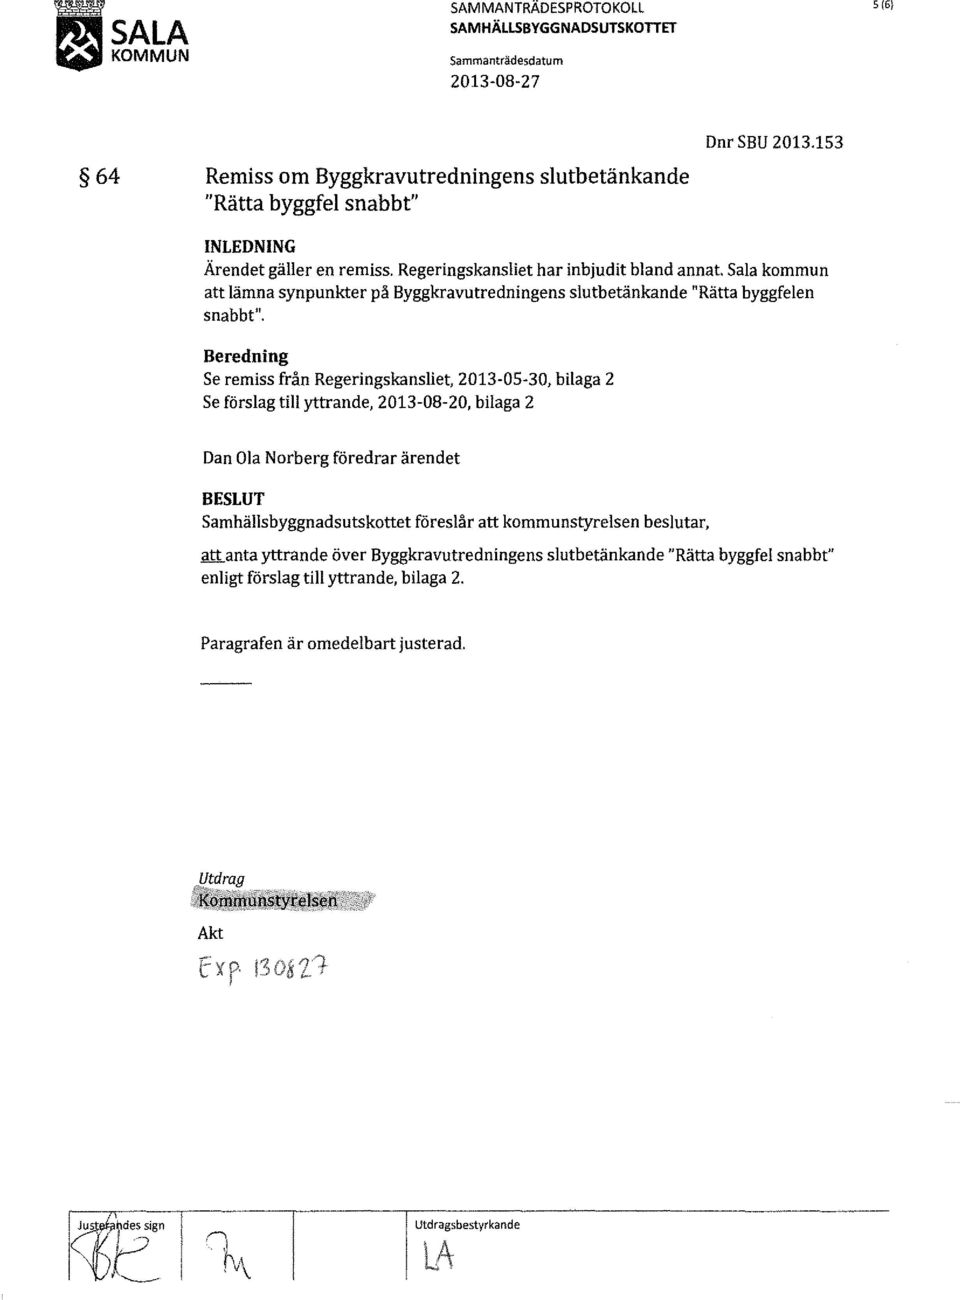 Beredning Se remiss från Regeringskansliet, 2013-05-30, bilaga 2 Se förslag till yttrande, 2013-08-20, bilaga 2 Dan Ola Norberg föredrar ärendet BESLUT Samhällsbyggnadsutskottet föreslår